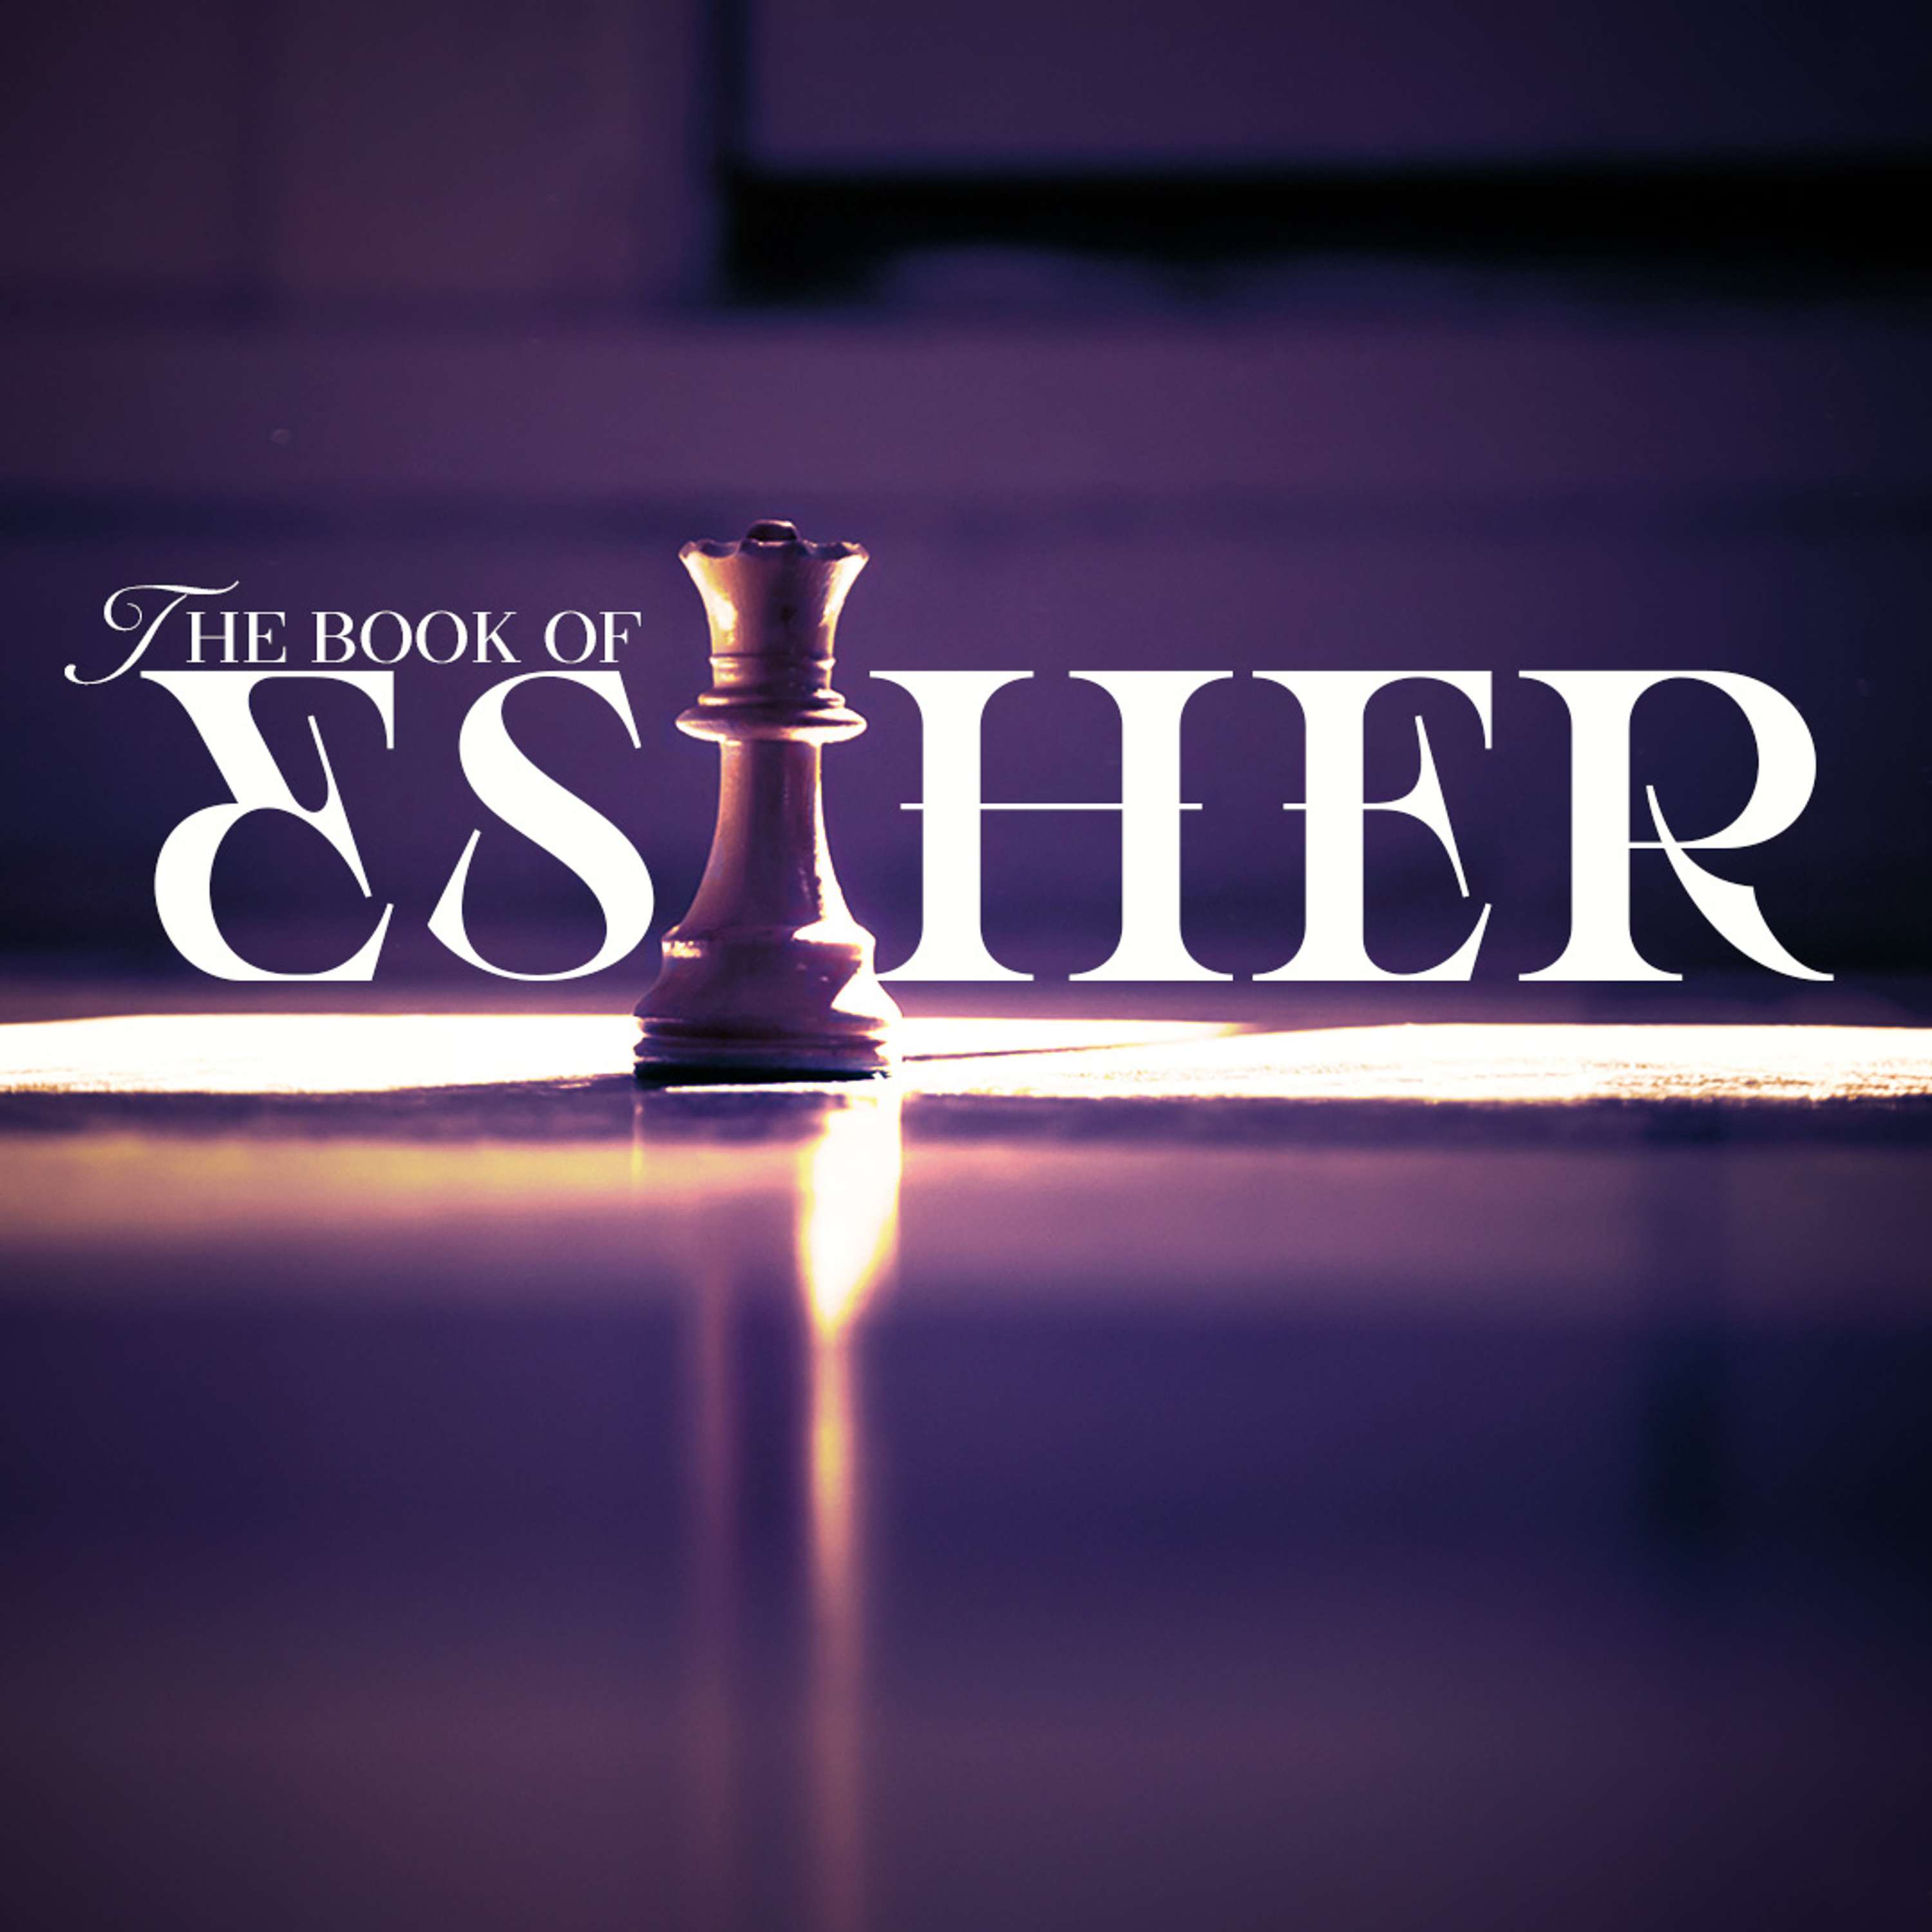 SVL - Esther - "A Better Way"